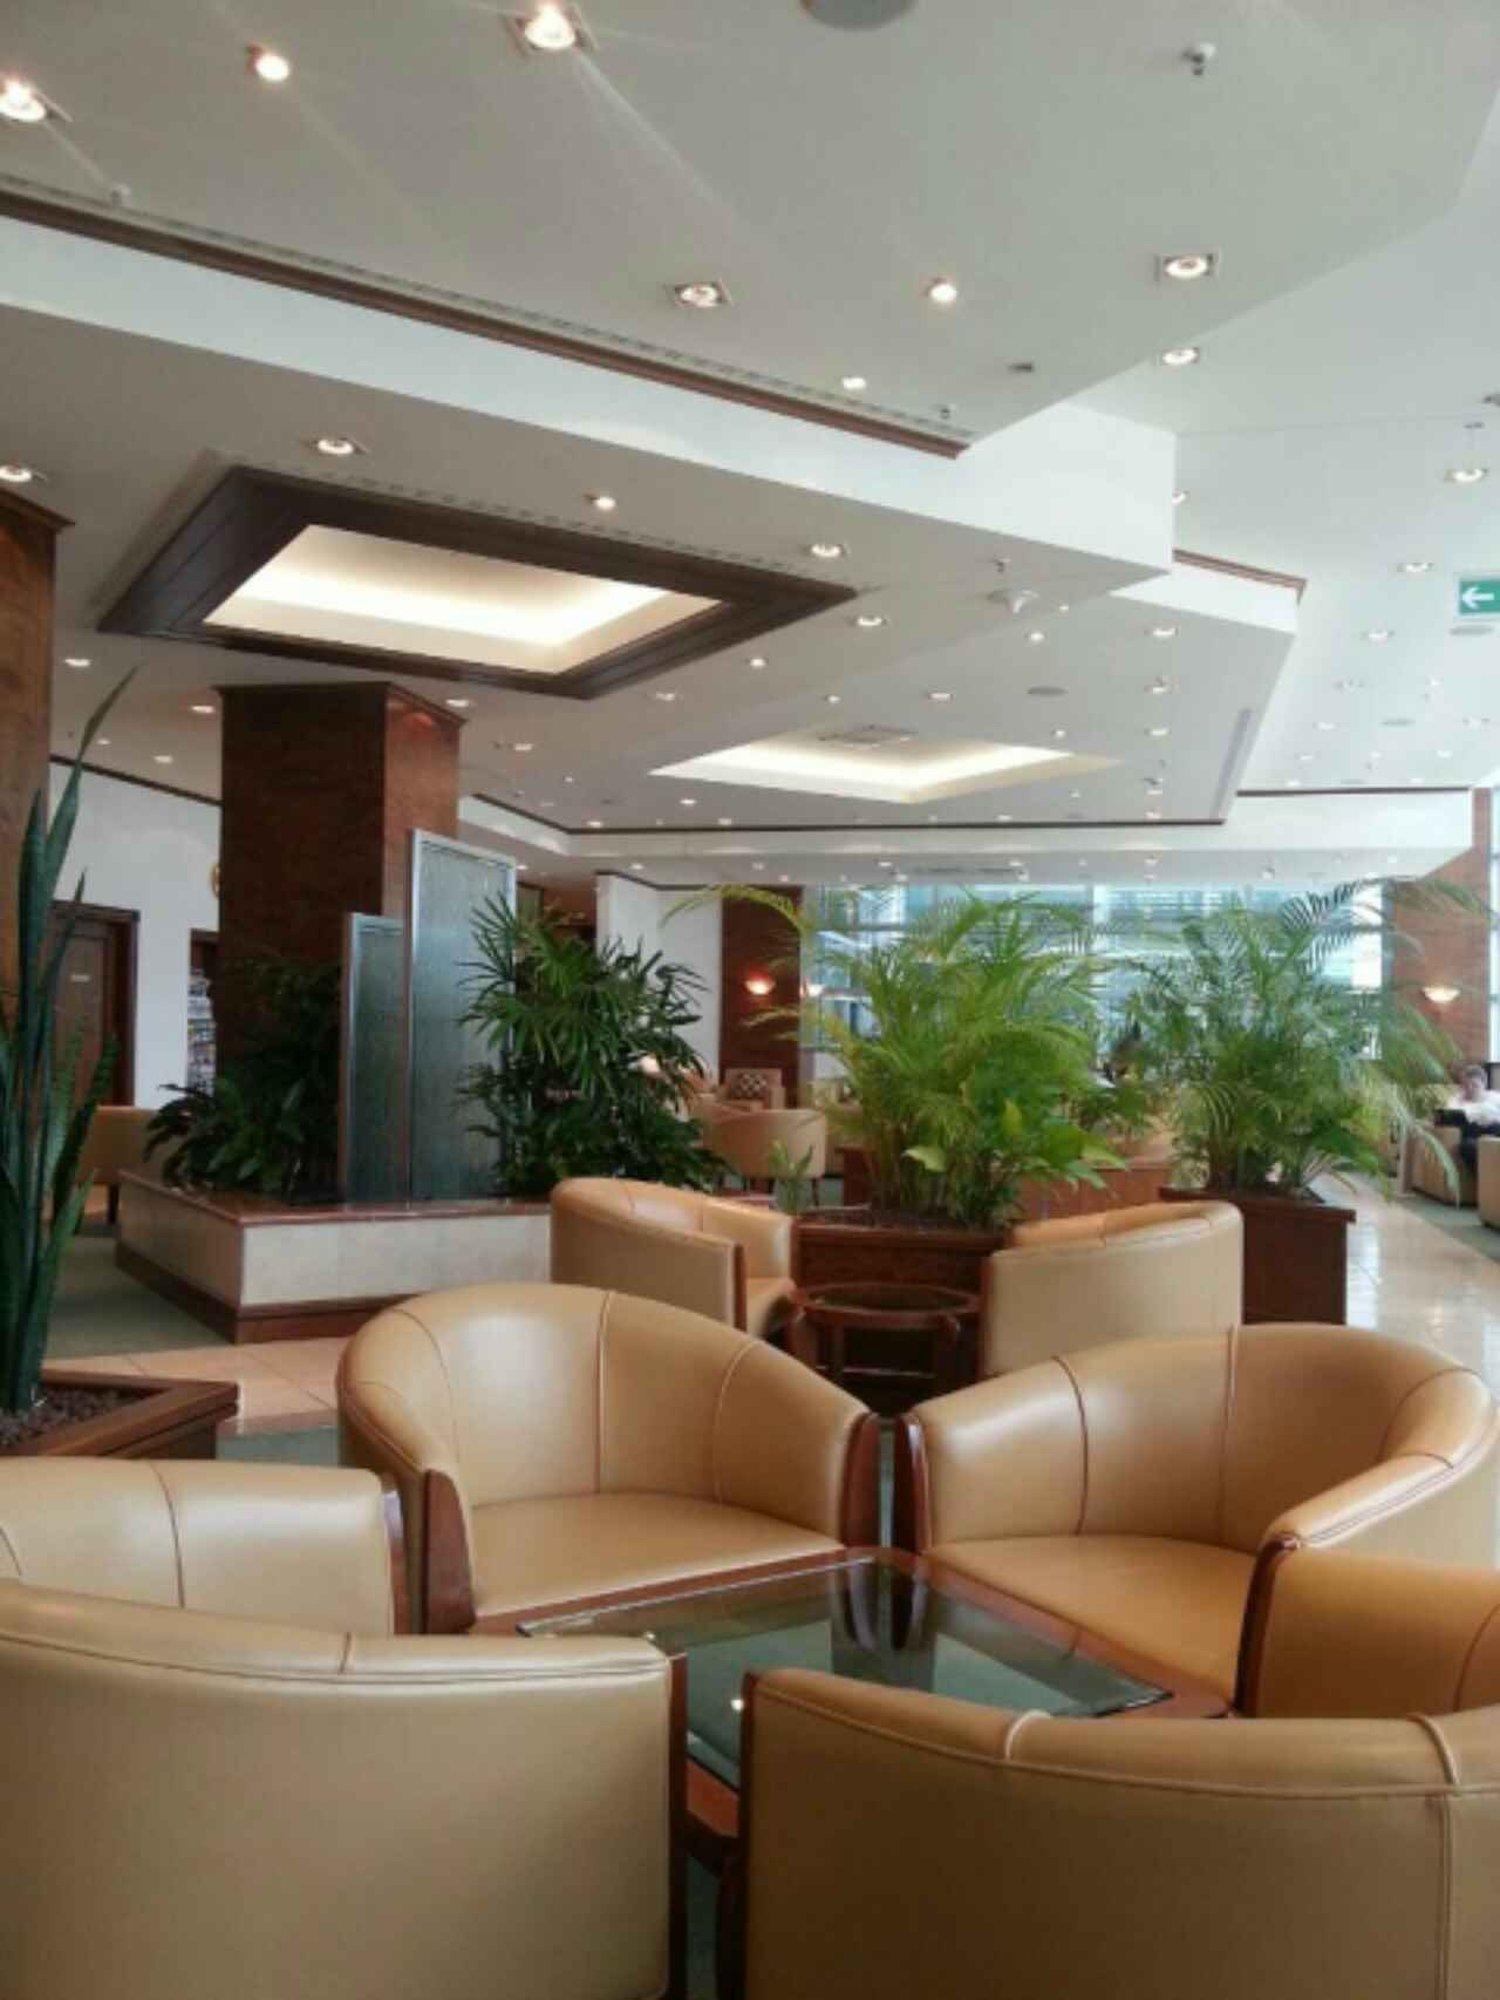 The Emirates Lounge image 7 of 8